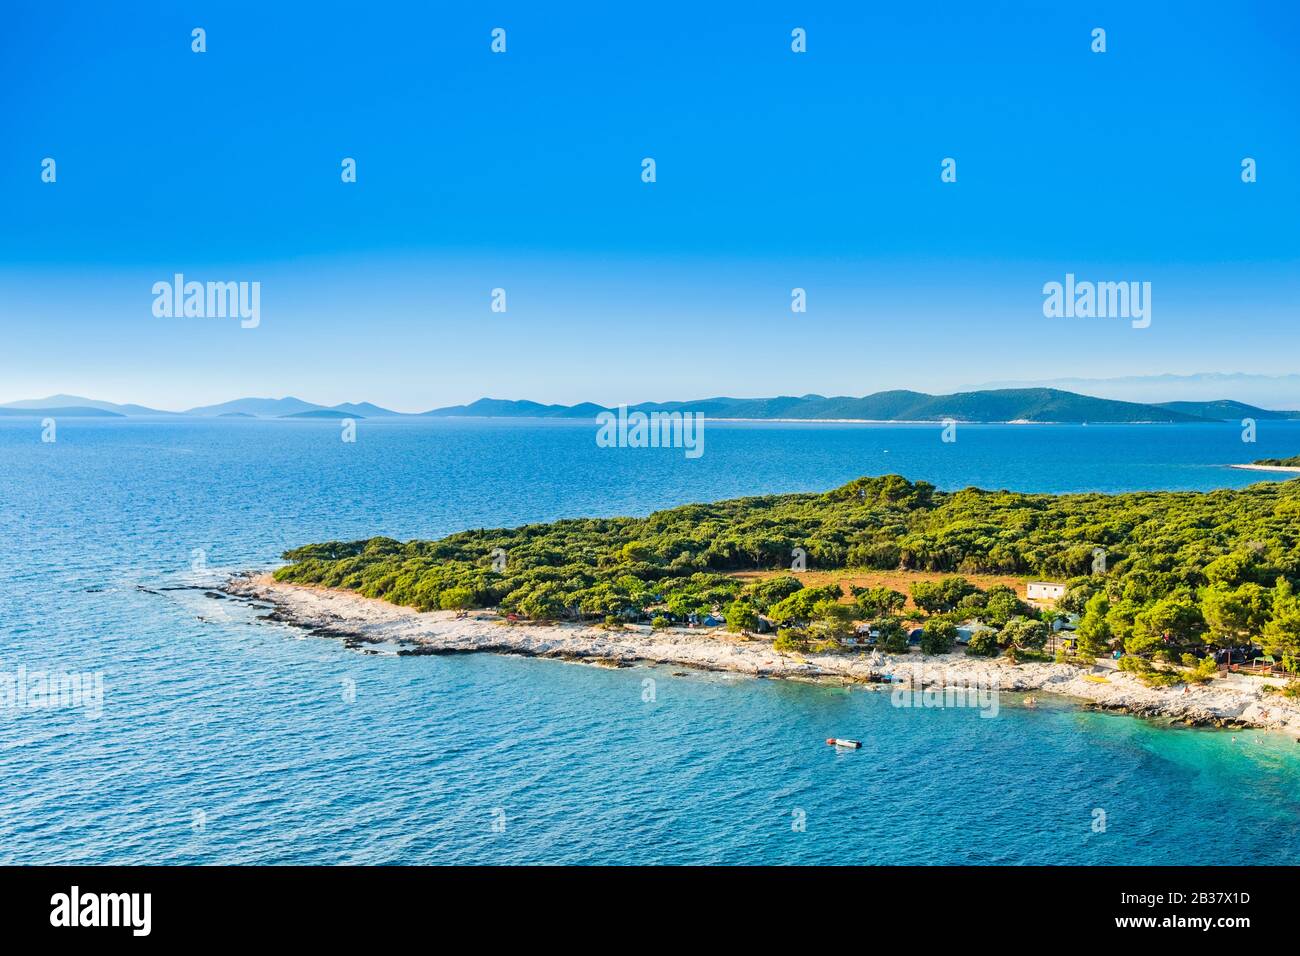 Wunderschönes meereskapsel an der Adria in Kroatien, Insel Dugi Otok, Camping in Pinienwald Stockfoto